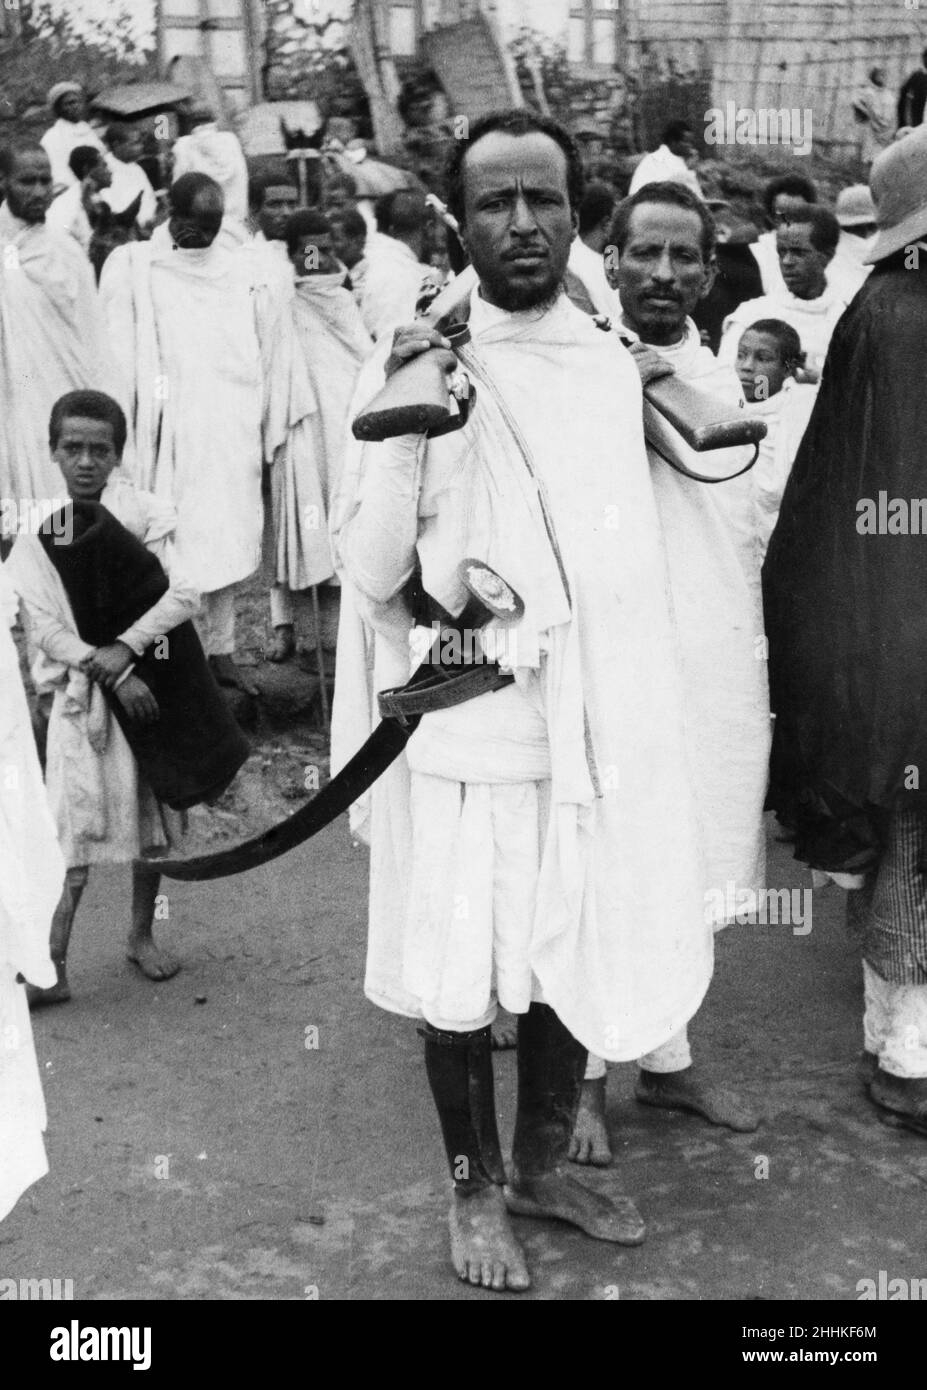 Guerre Abyssinienne septembre 1935.des tribesmen arrivent à Addis-Abeba pour s'y engager de loyauté envers l'empereur Haile Selassie après l'invasion de l'Éthiopie par les forces italiennes. Banque D'Images